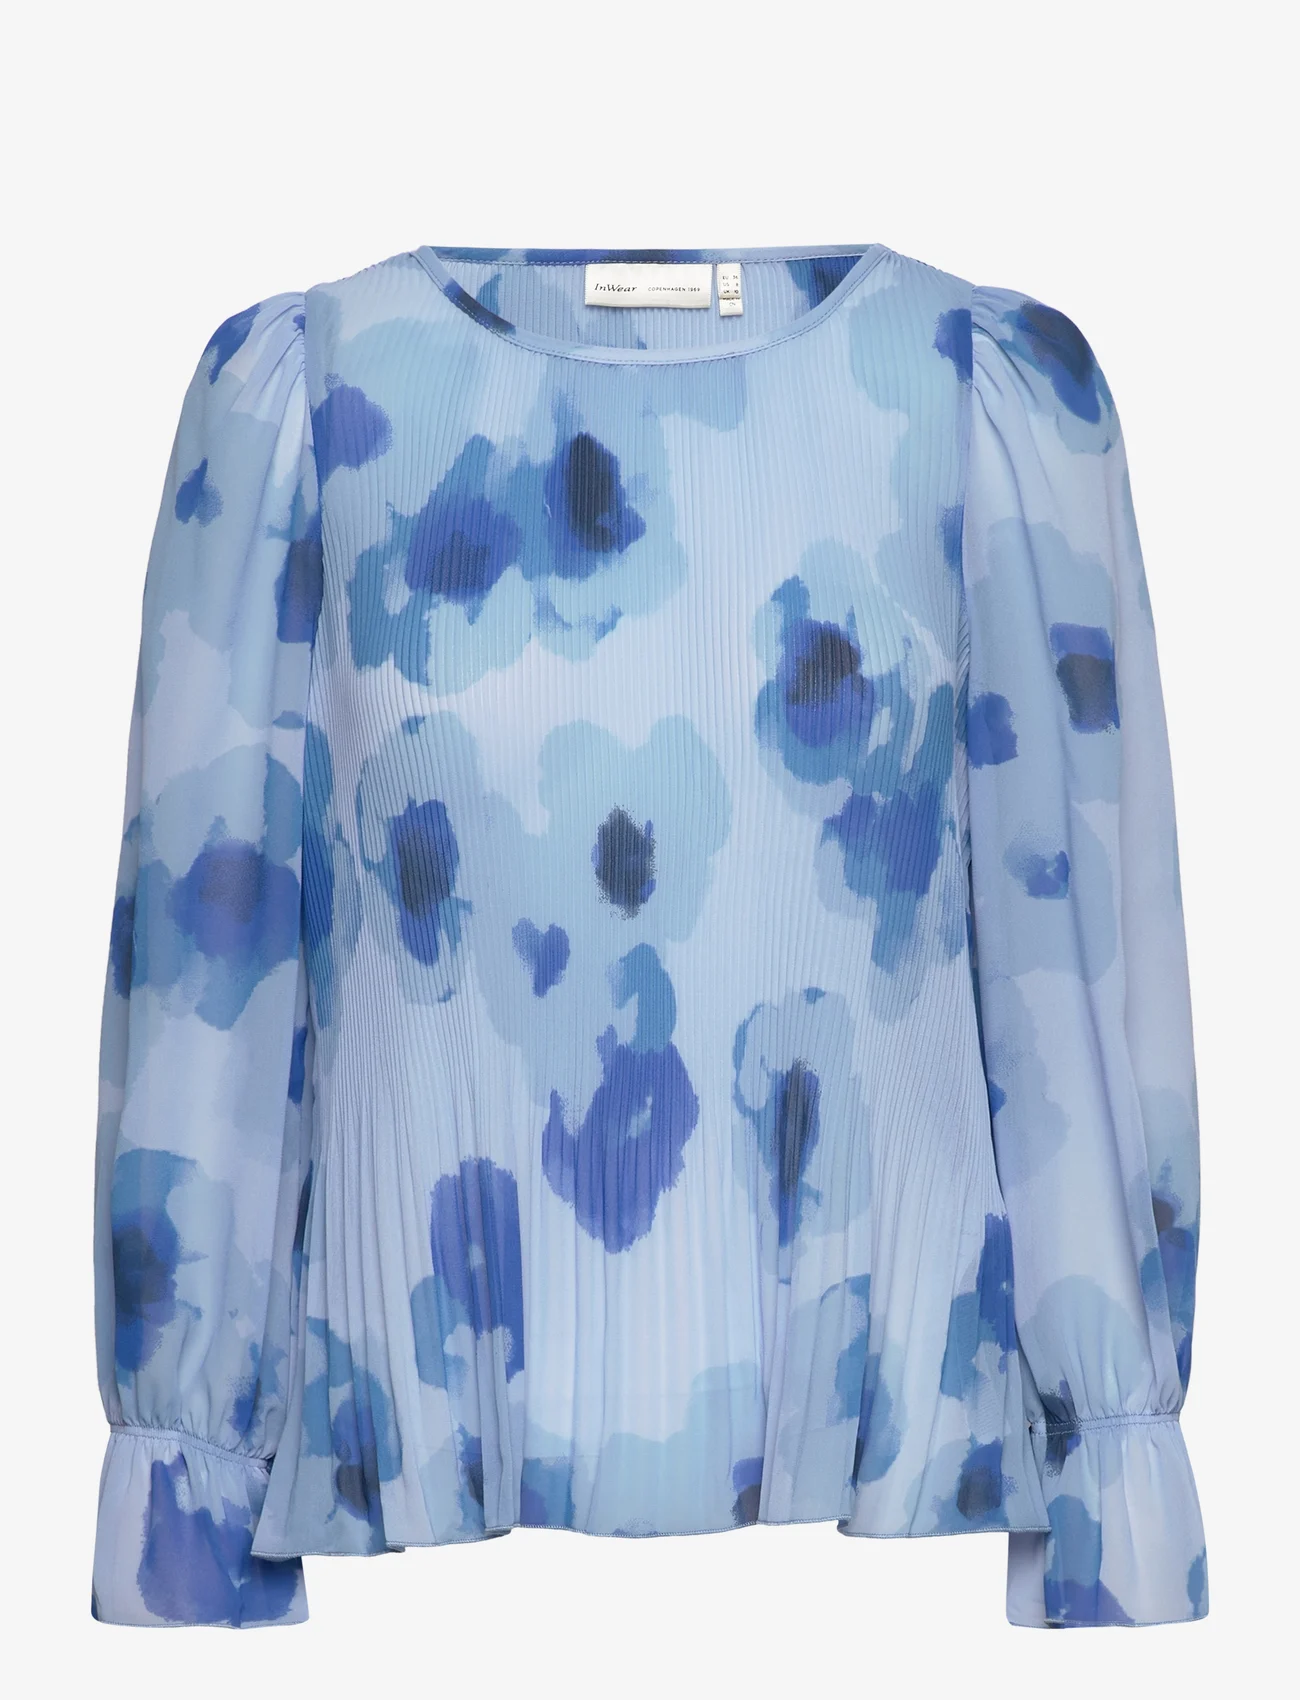 InWear - DesdraIW Blouse - long-sleeved blouses - blue poetic flower - 0